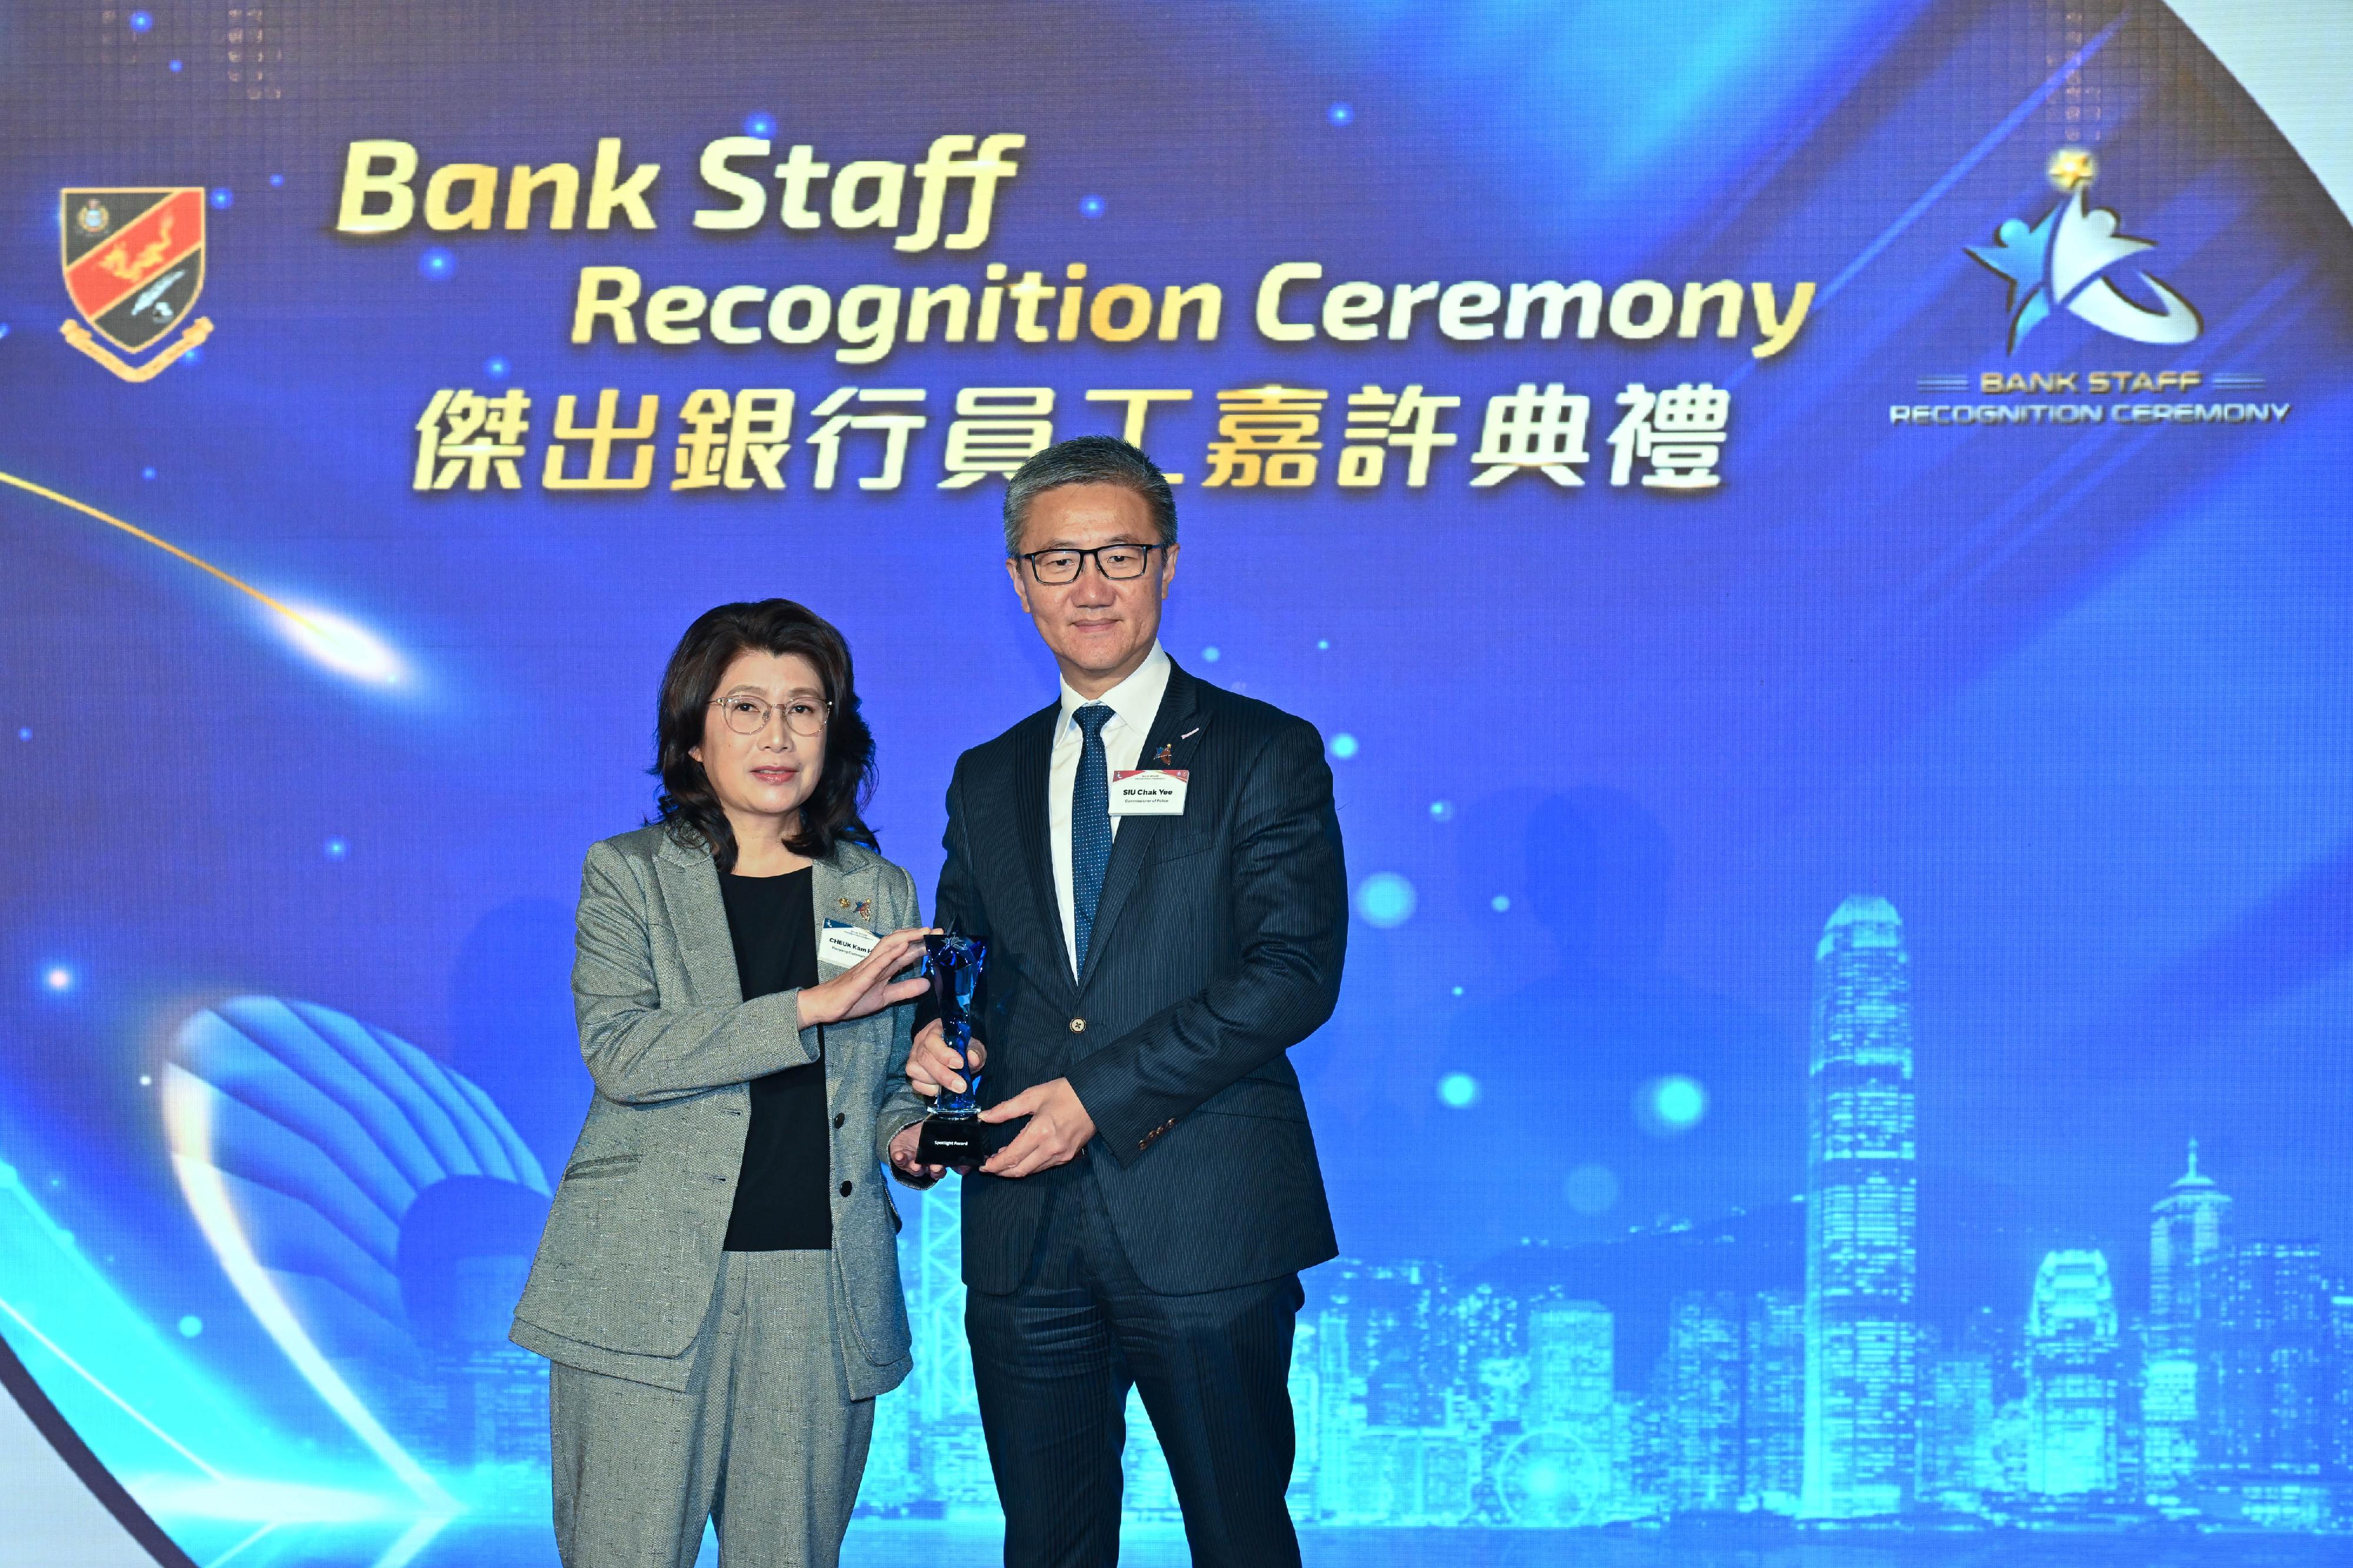 香港警务处今日（三月二十二日）举办「杰出银行员工嘉许典礼」。图示警务处处长萧泽颐（右）颁奖予获得「杰出银行员工大奬」的银行代表。